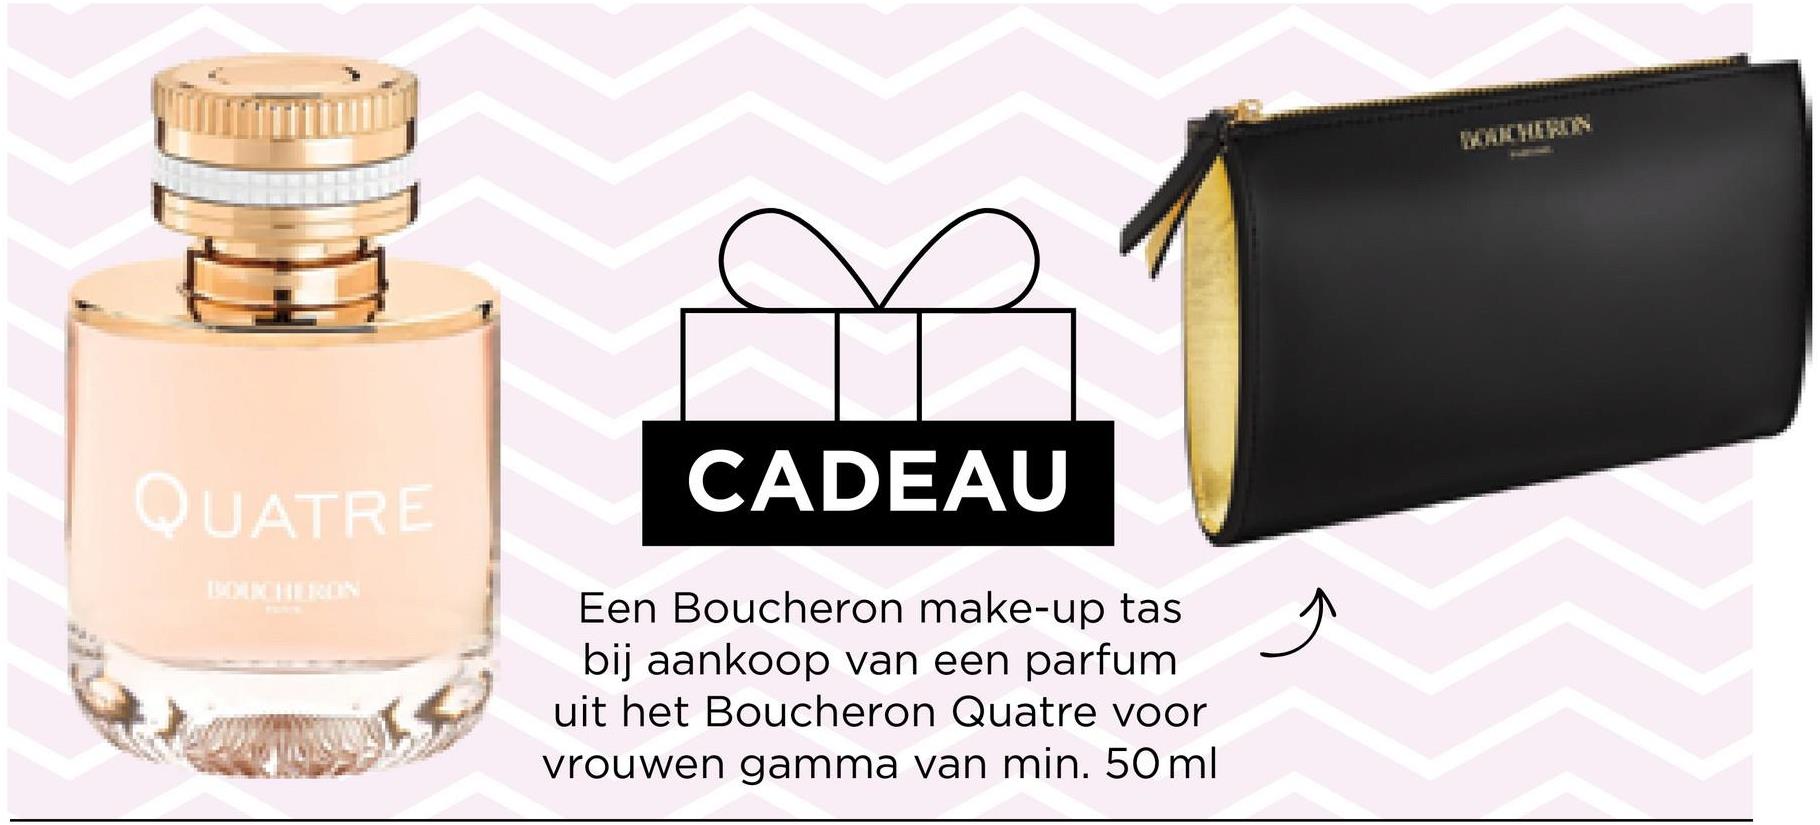 QUATRE
CADEAU
Een Boucheron make-up tas
bij aankoop van een parfum
uit het Boucheron Quatre voor
vrouwen gamma van min. 50 ml